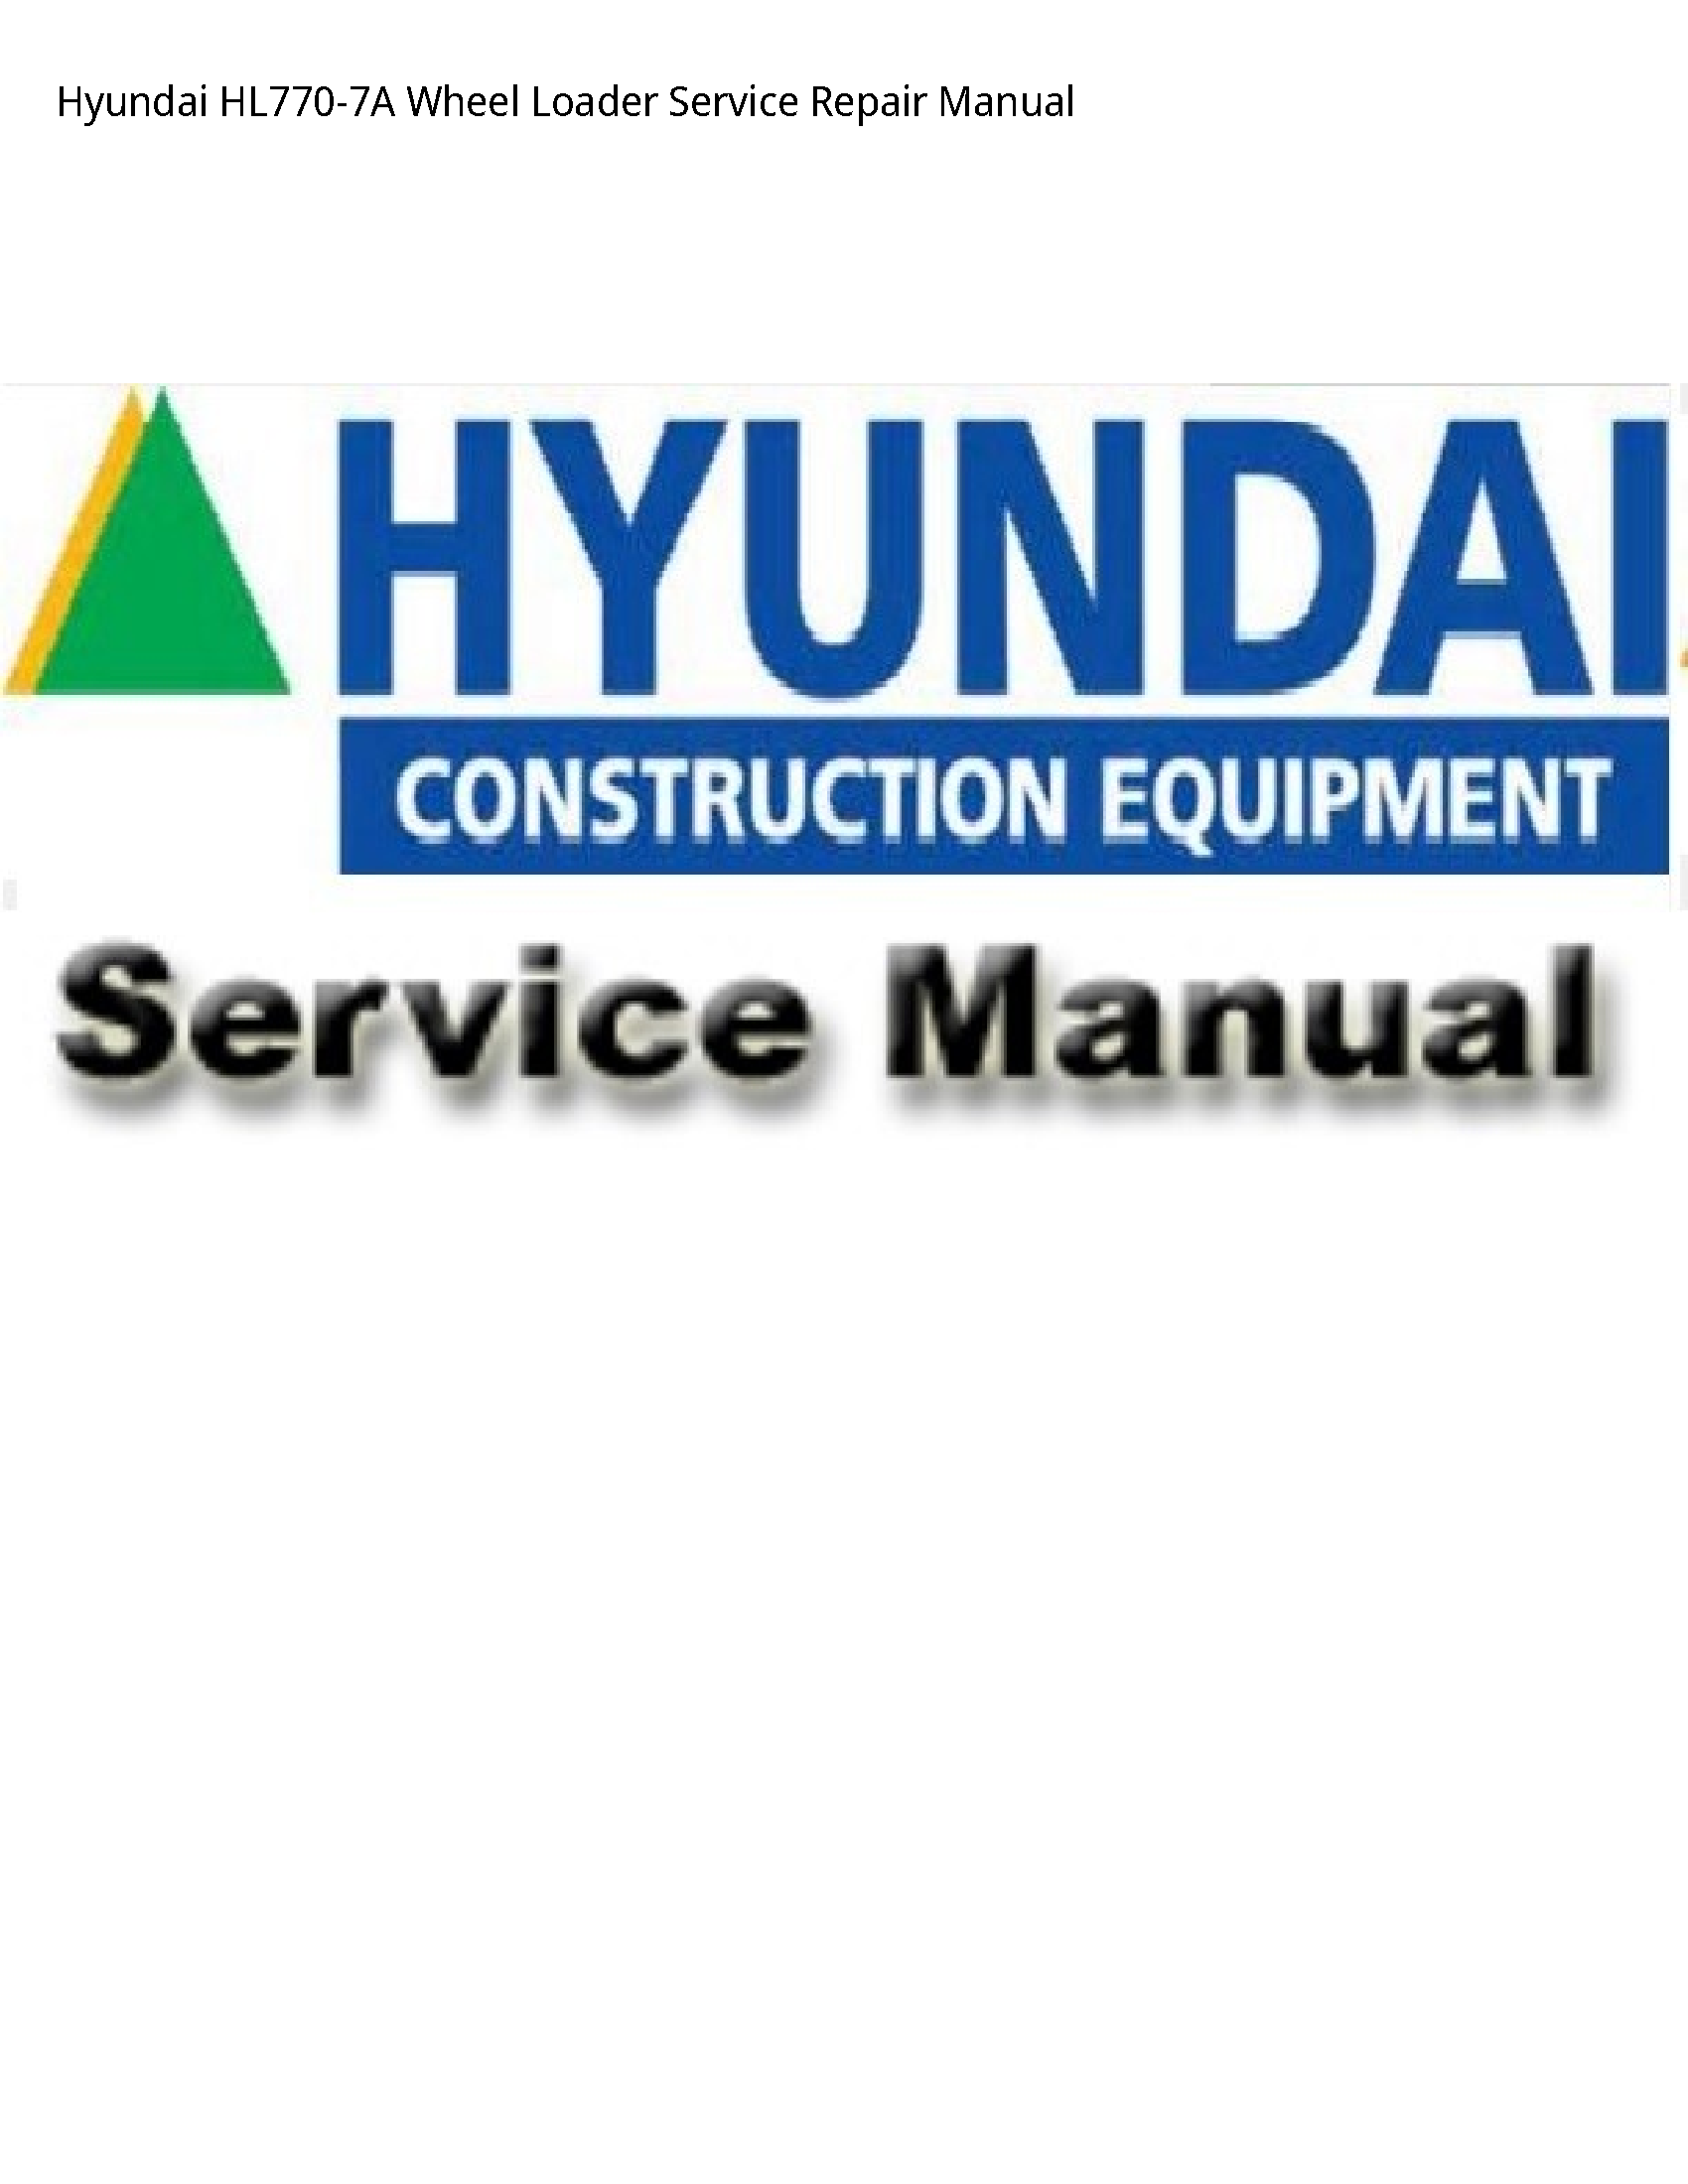 Hyundai HL770-7A Wheel Loader manual